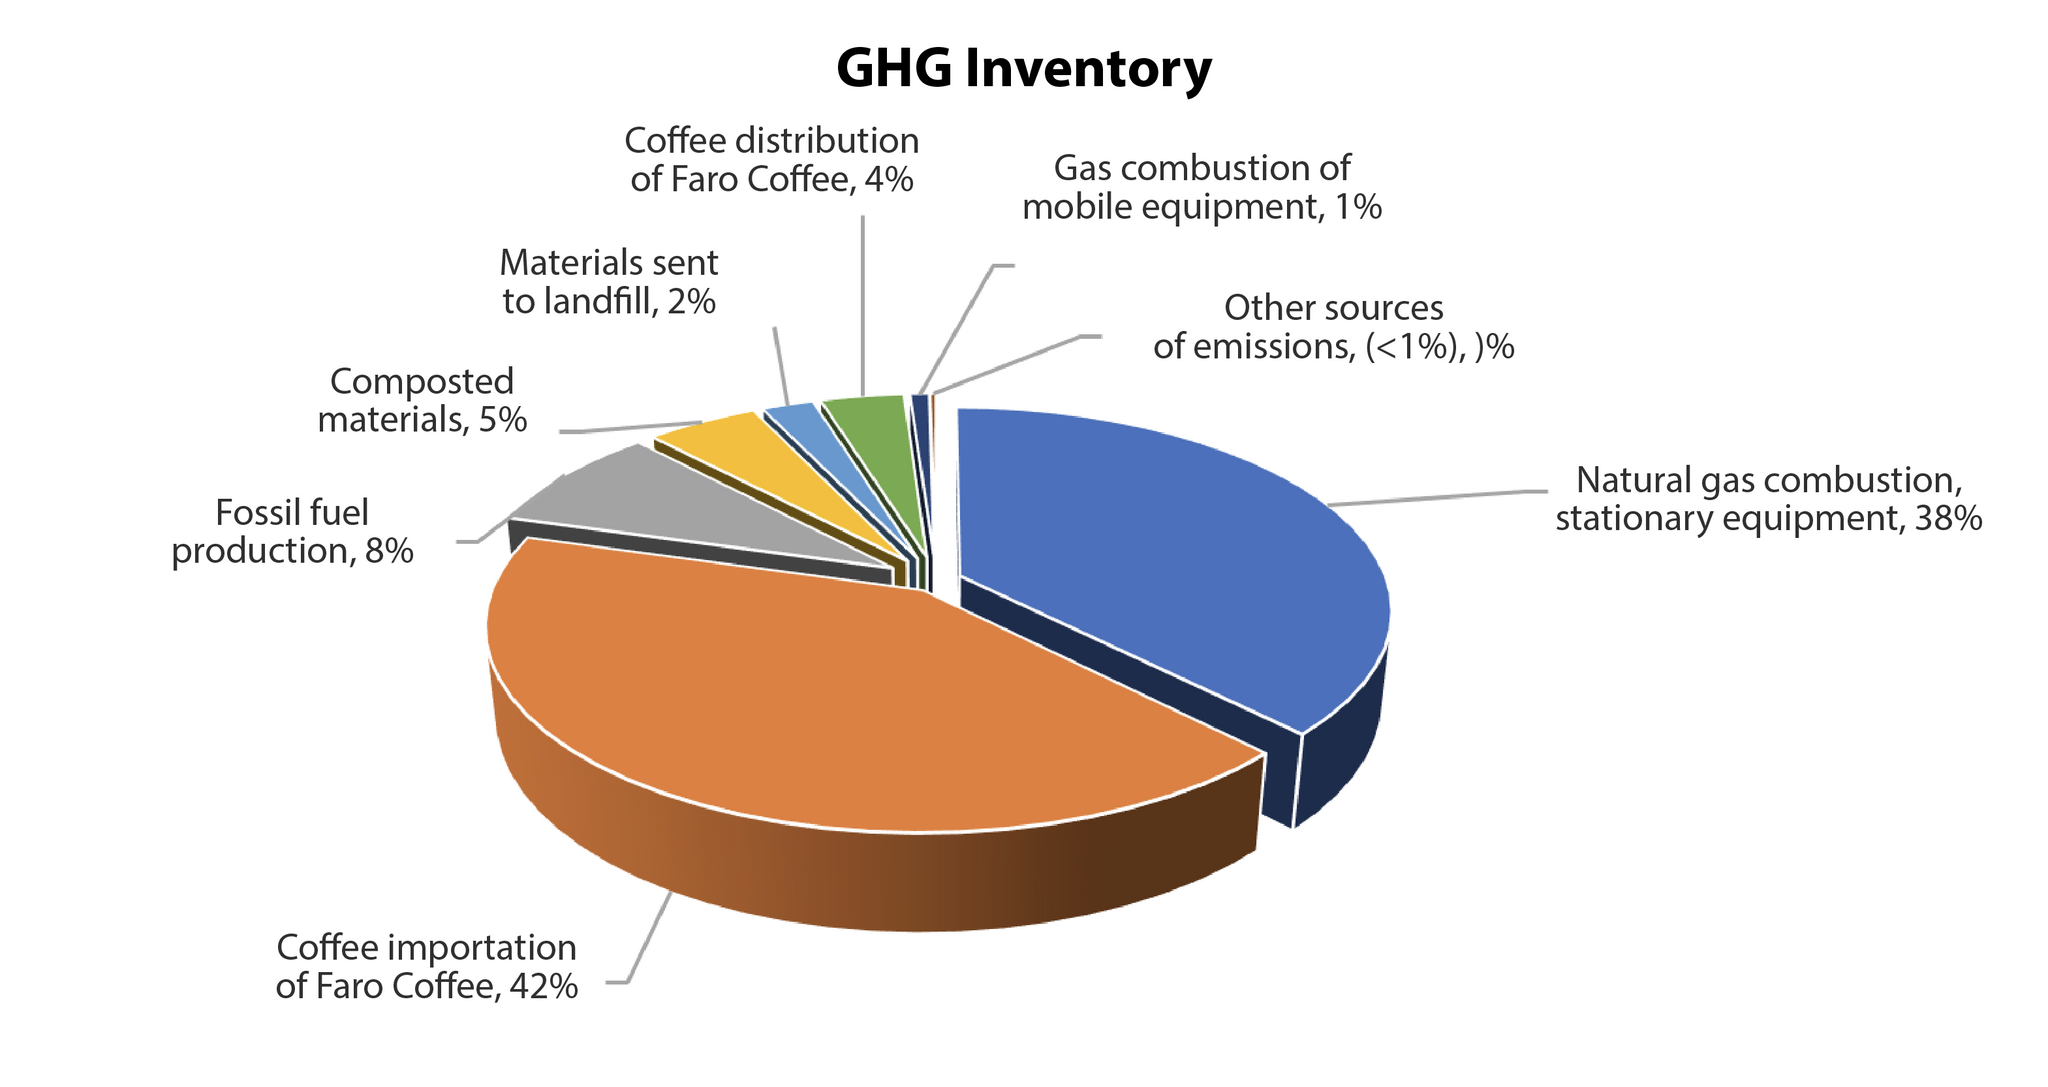 GHG Inventory Faro